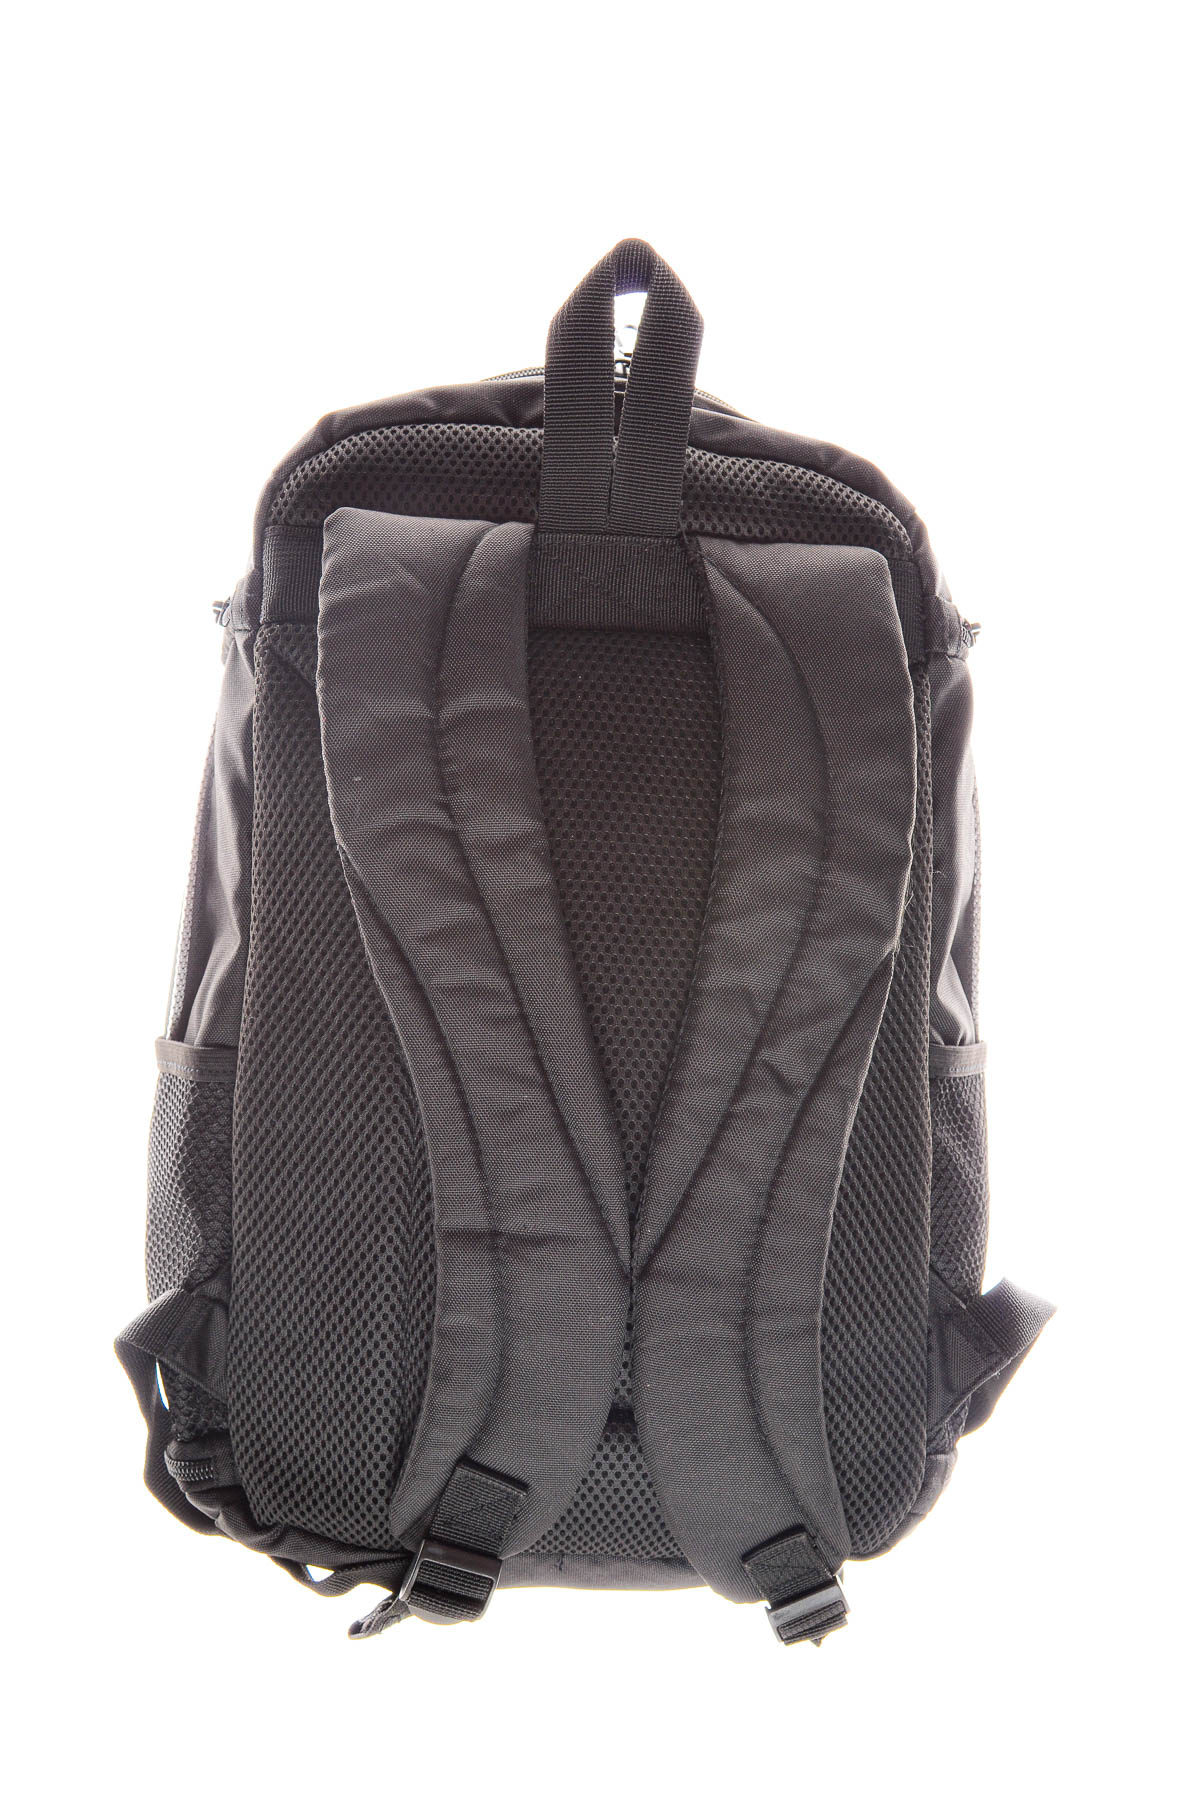 Backpack - 1